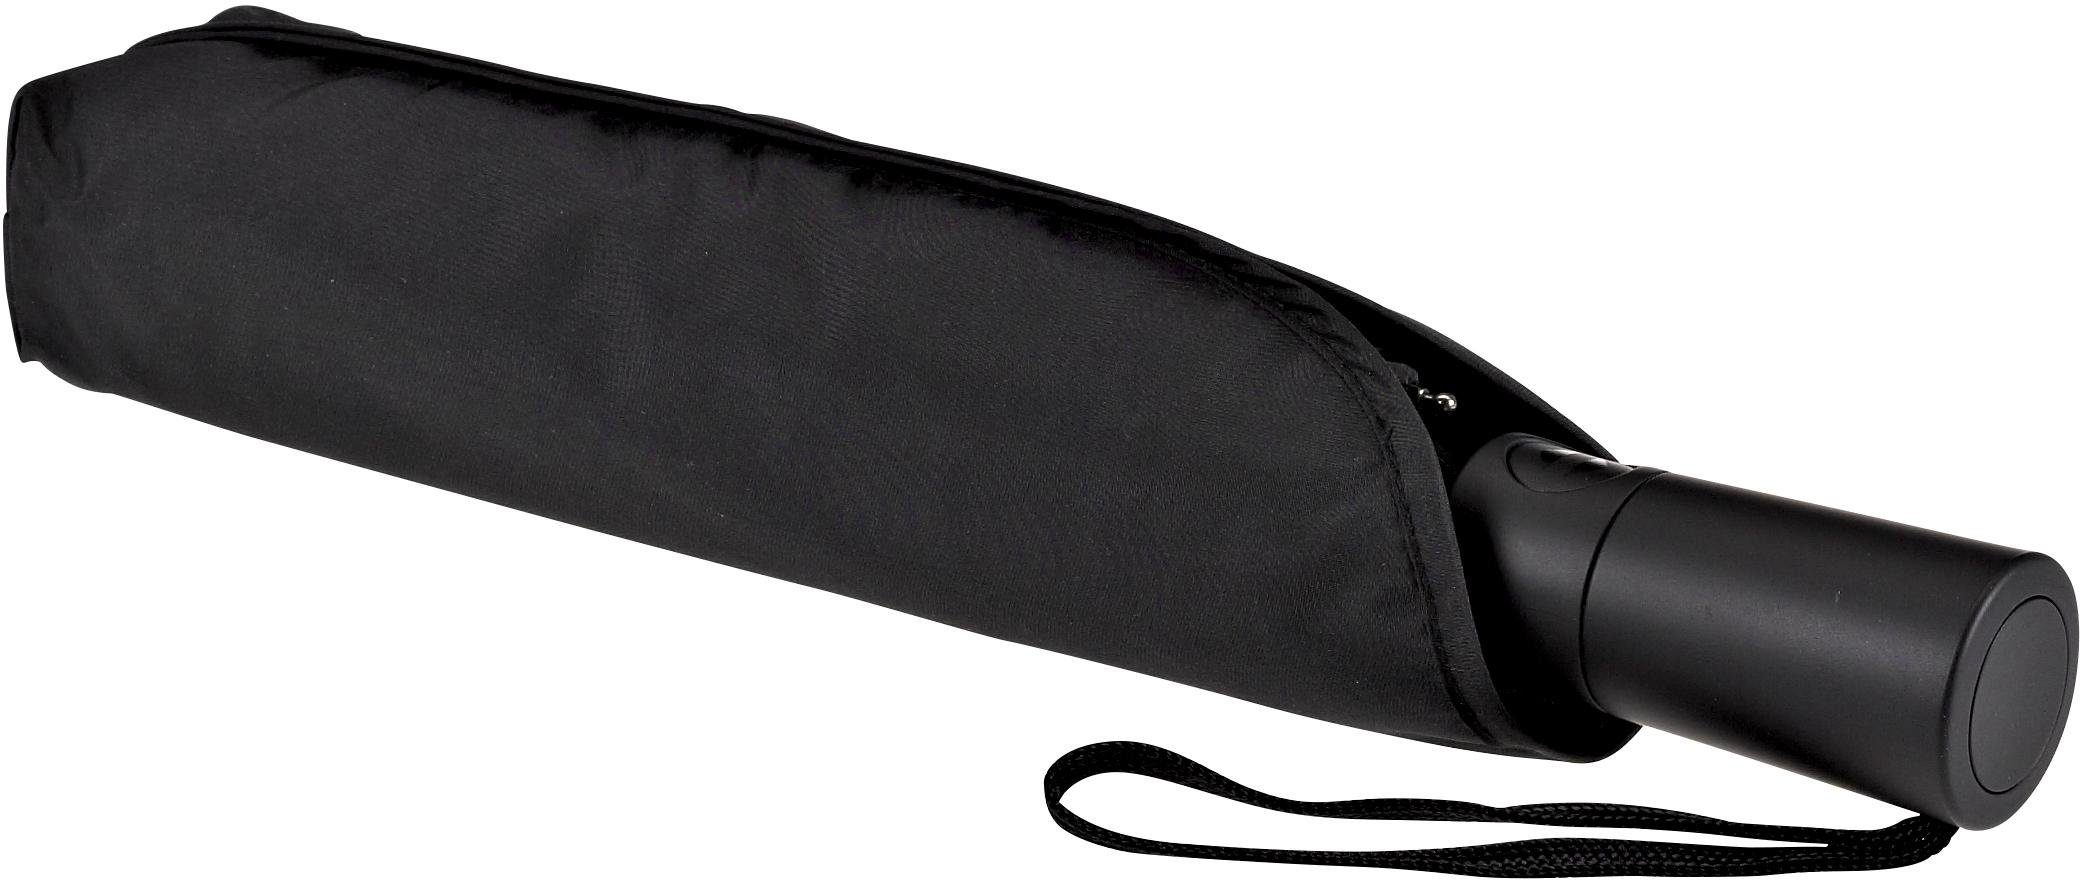 Taschenregenschirm EuroSCHIRM® schwarz 3020, Automatik